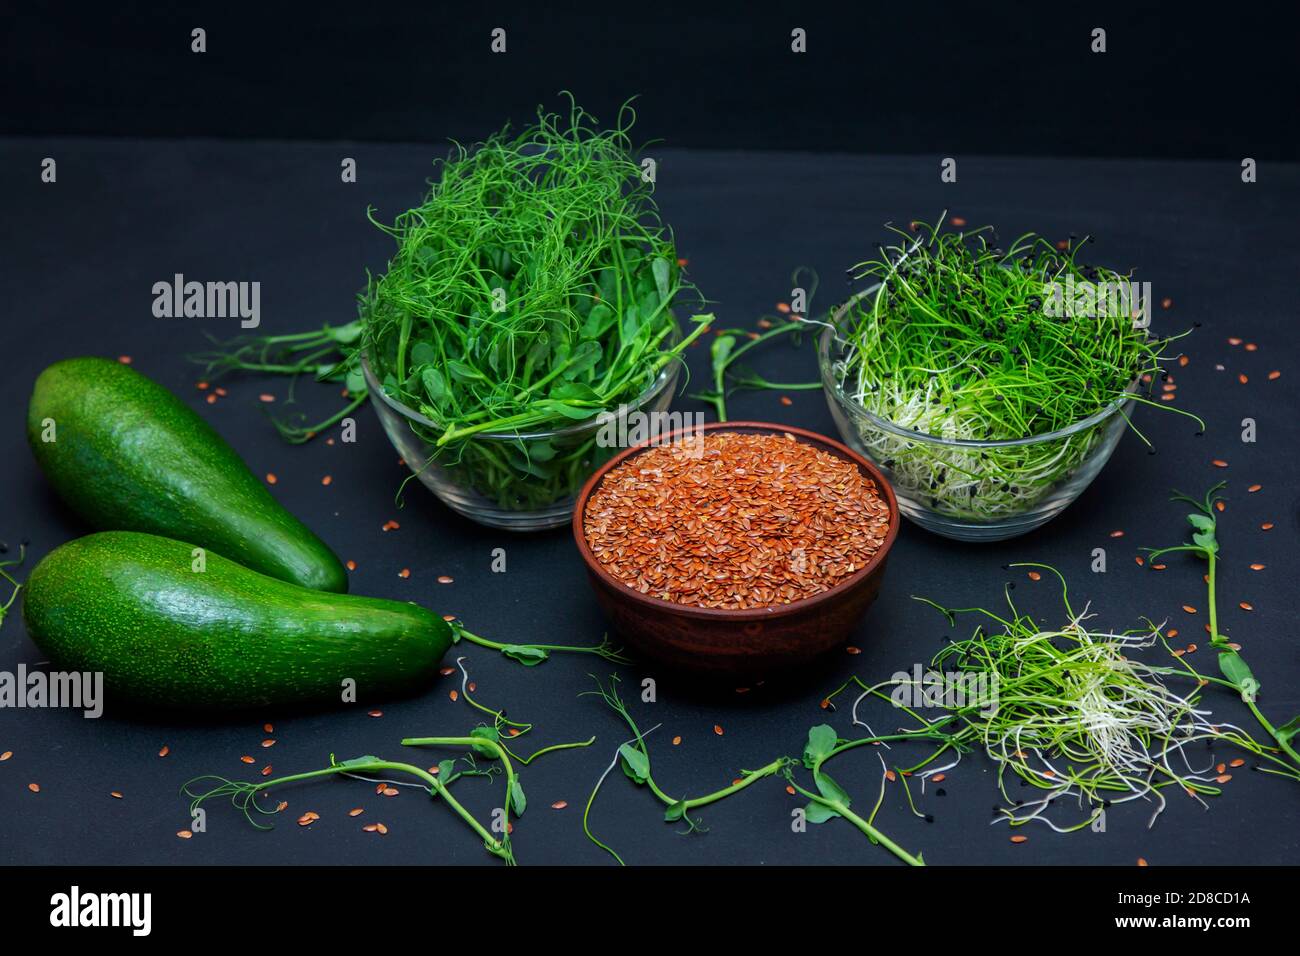 Microgreens: Grüne Erbsen und Zwiebelsprossen, Leinsamen in Glasschüsseln und Avocado auf schwarzem Hintergrund. Gesunde vegetarische Ernährung und Diät-Konzept. Stockfoto